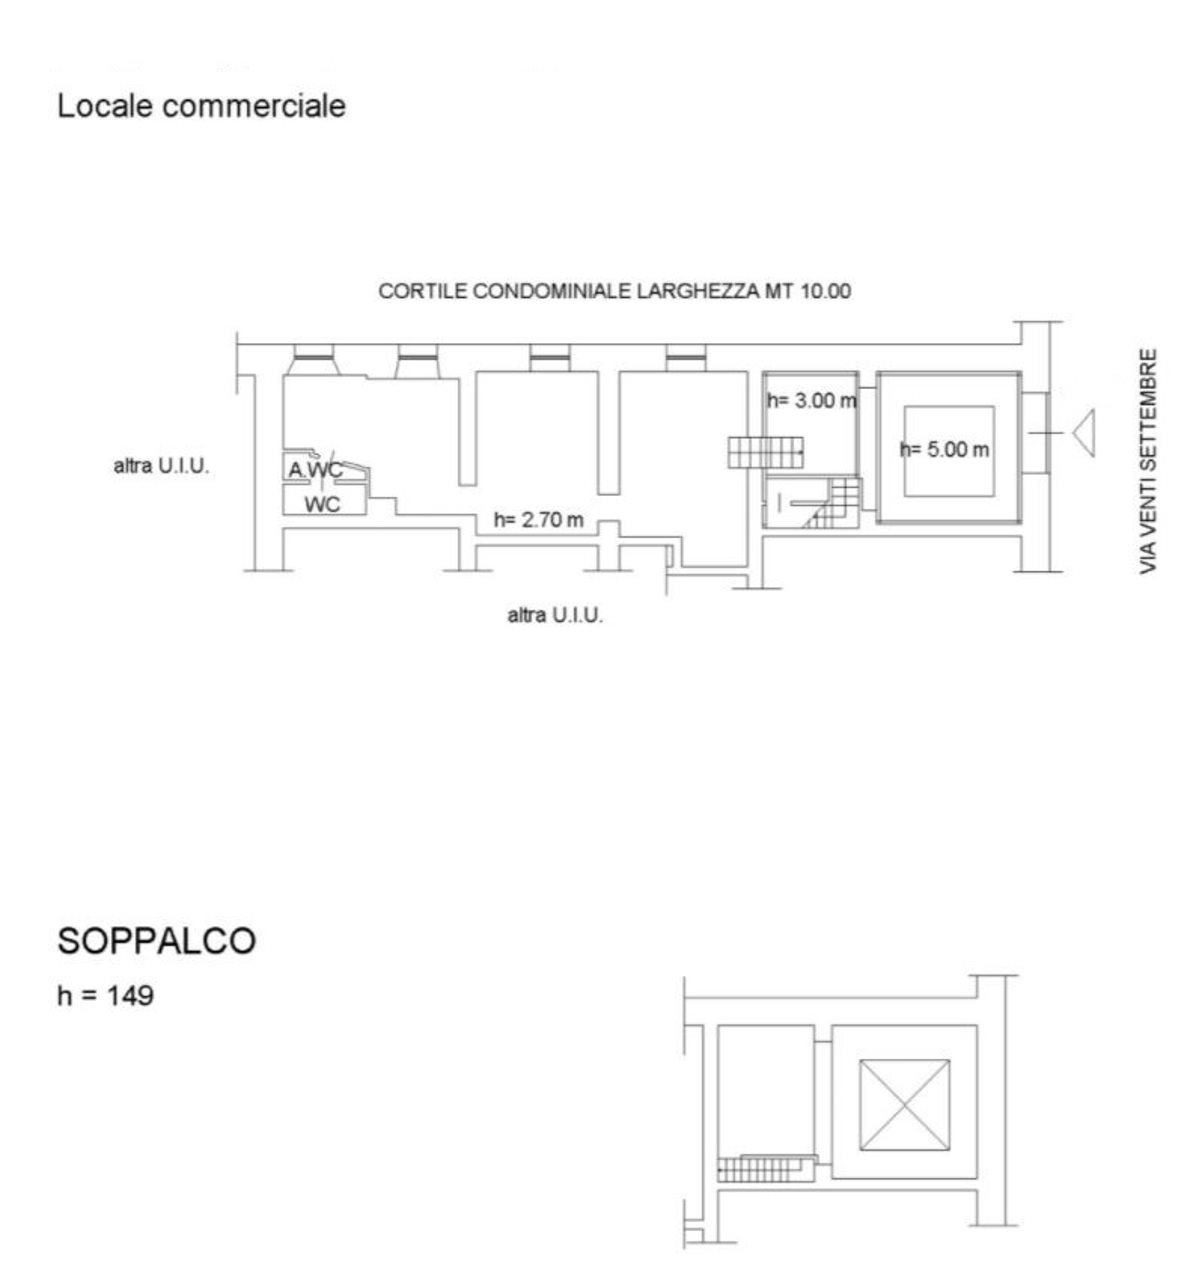 Planimetria con Soppalco.jpg